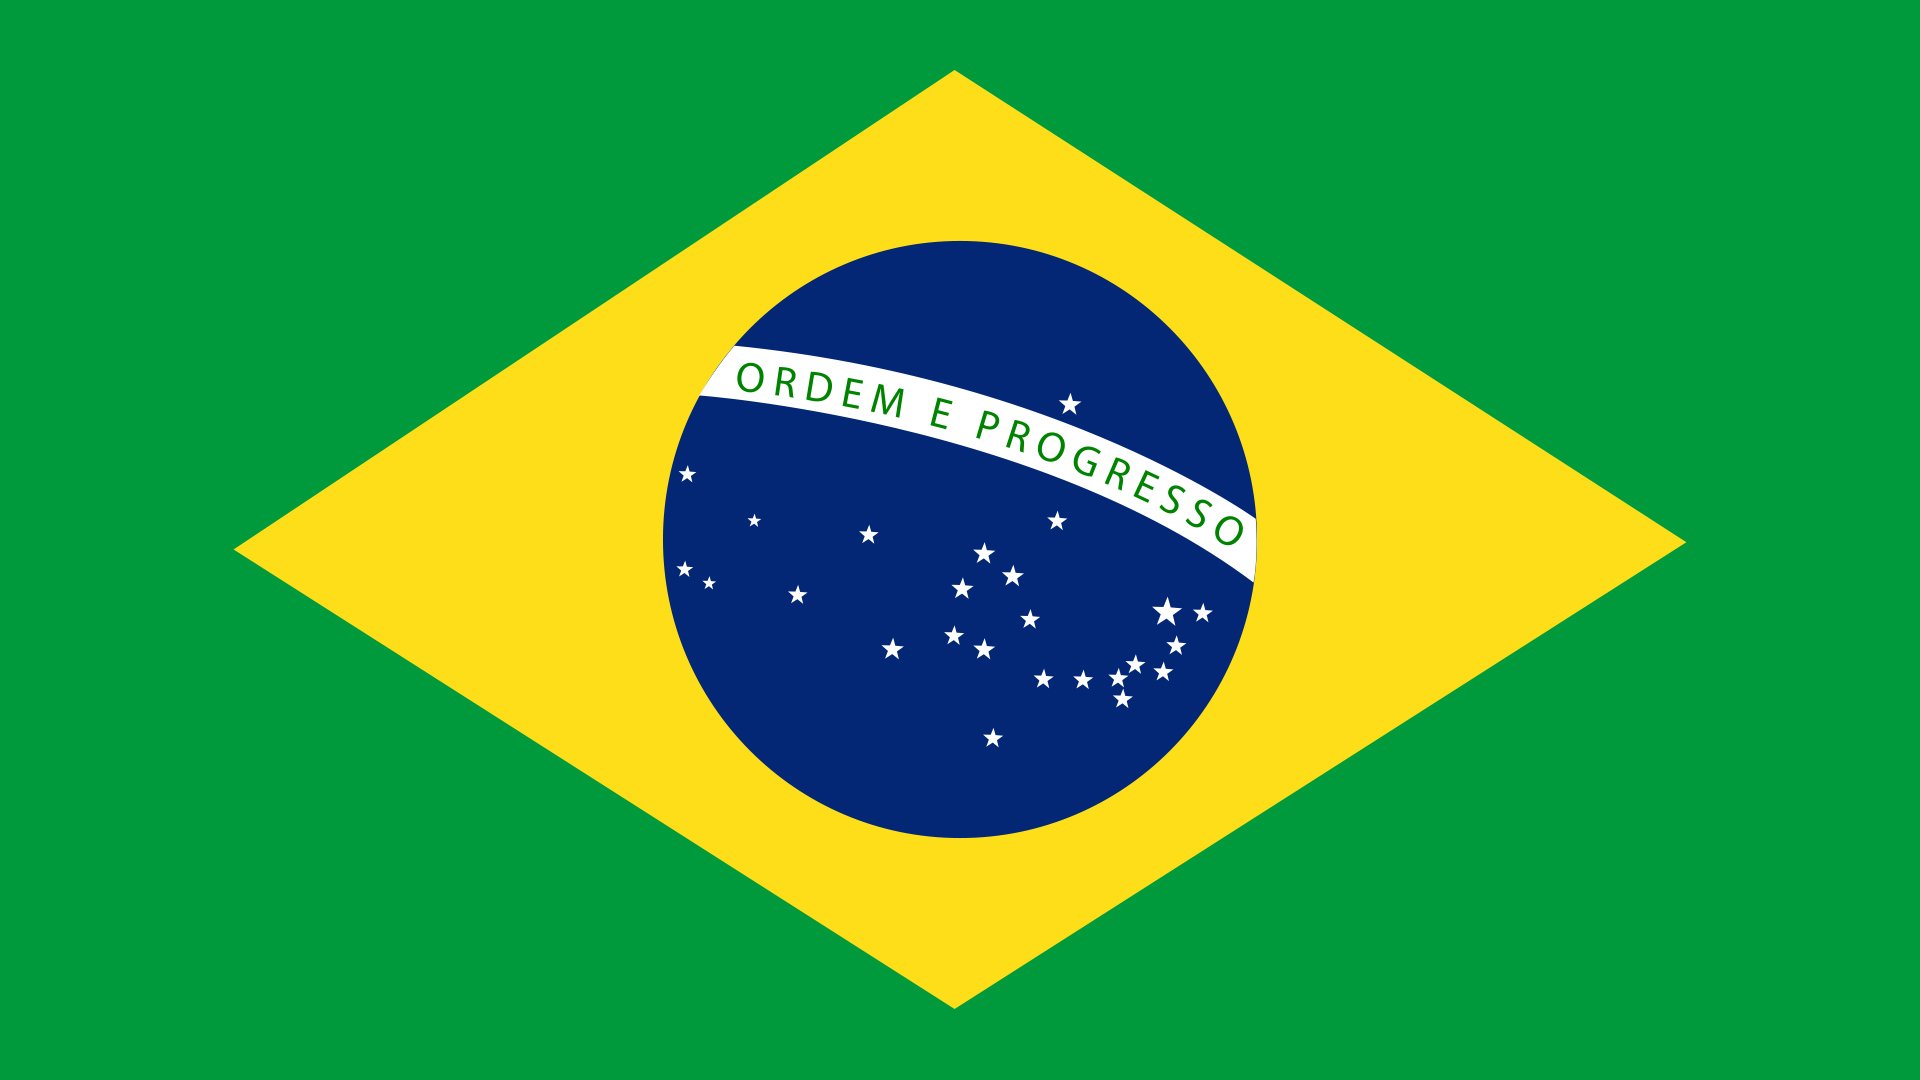 The Brazil flag